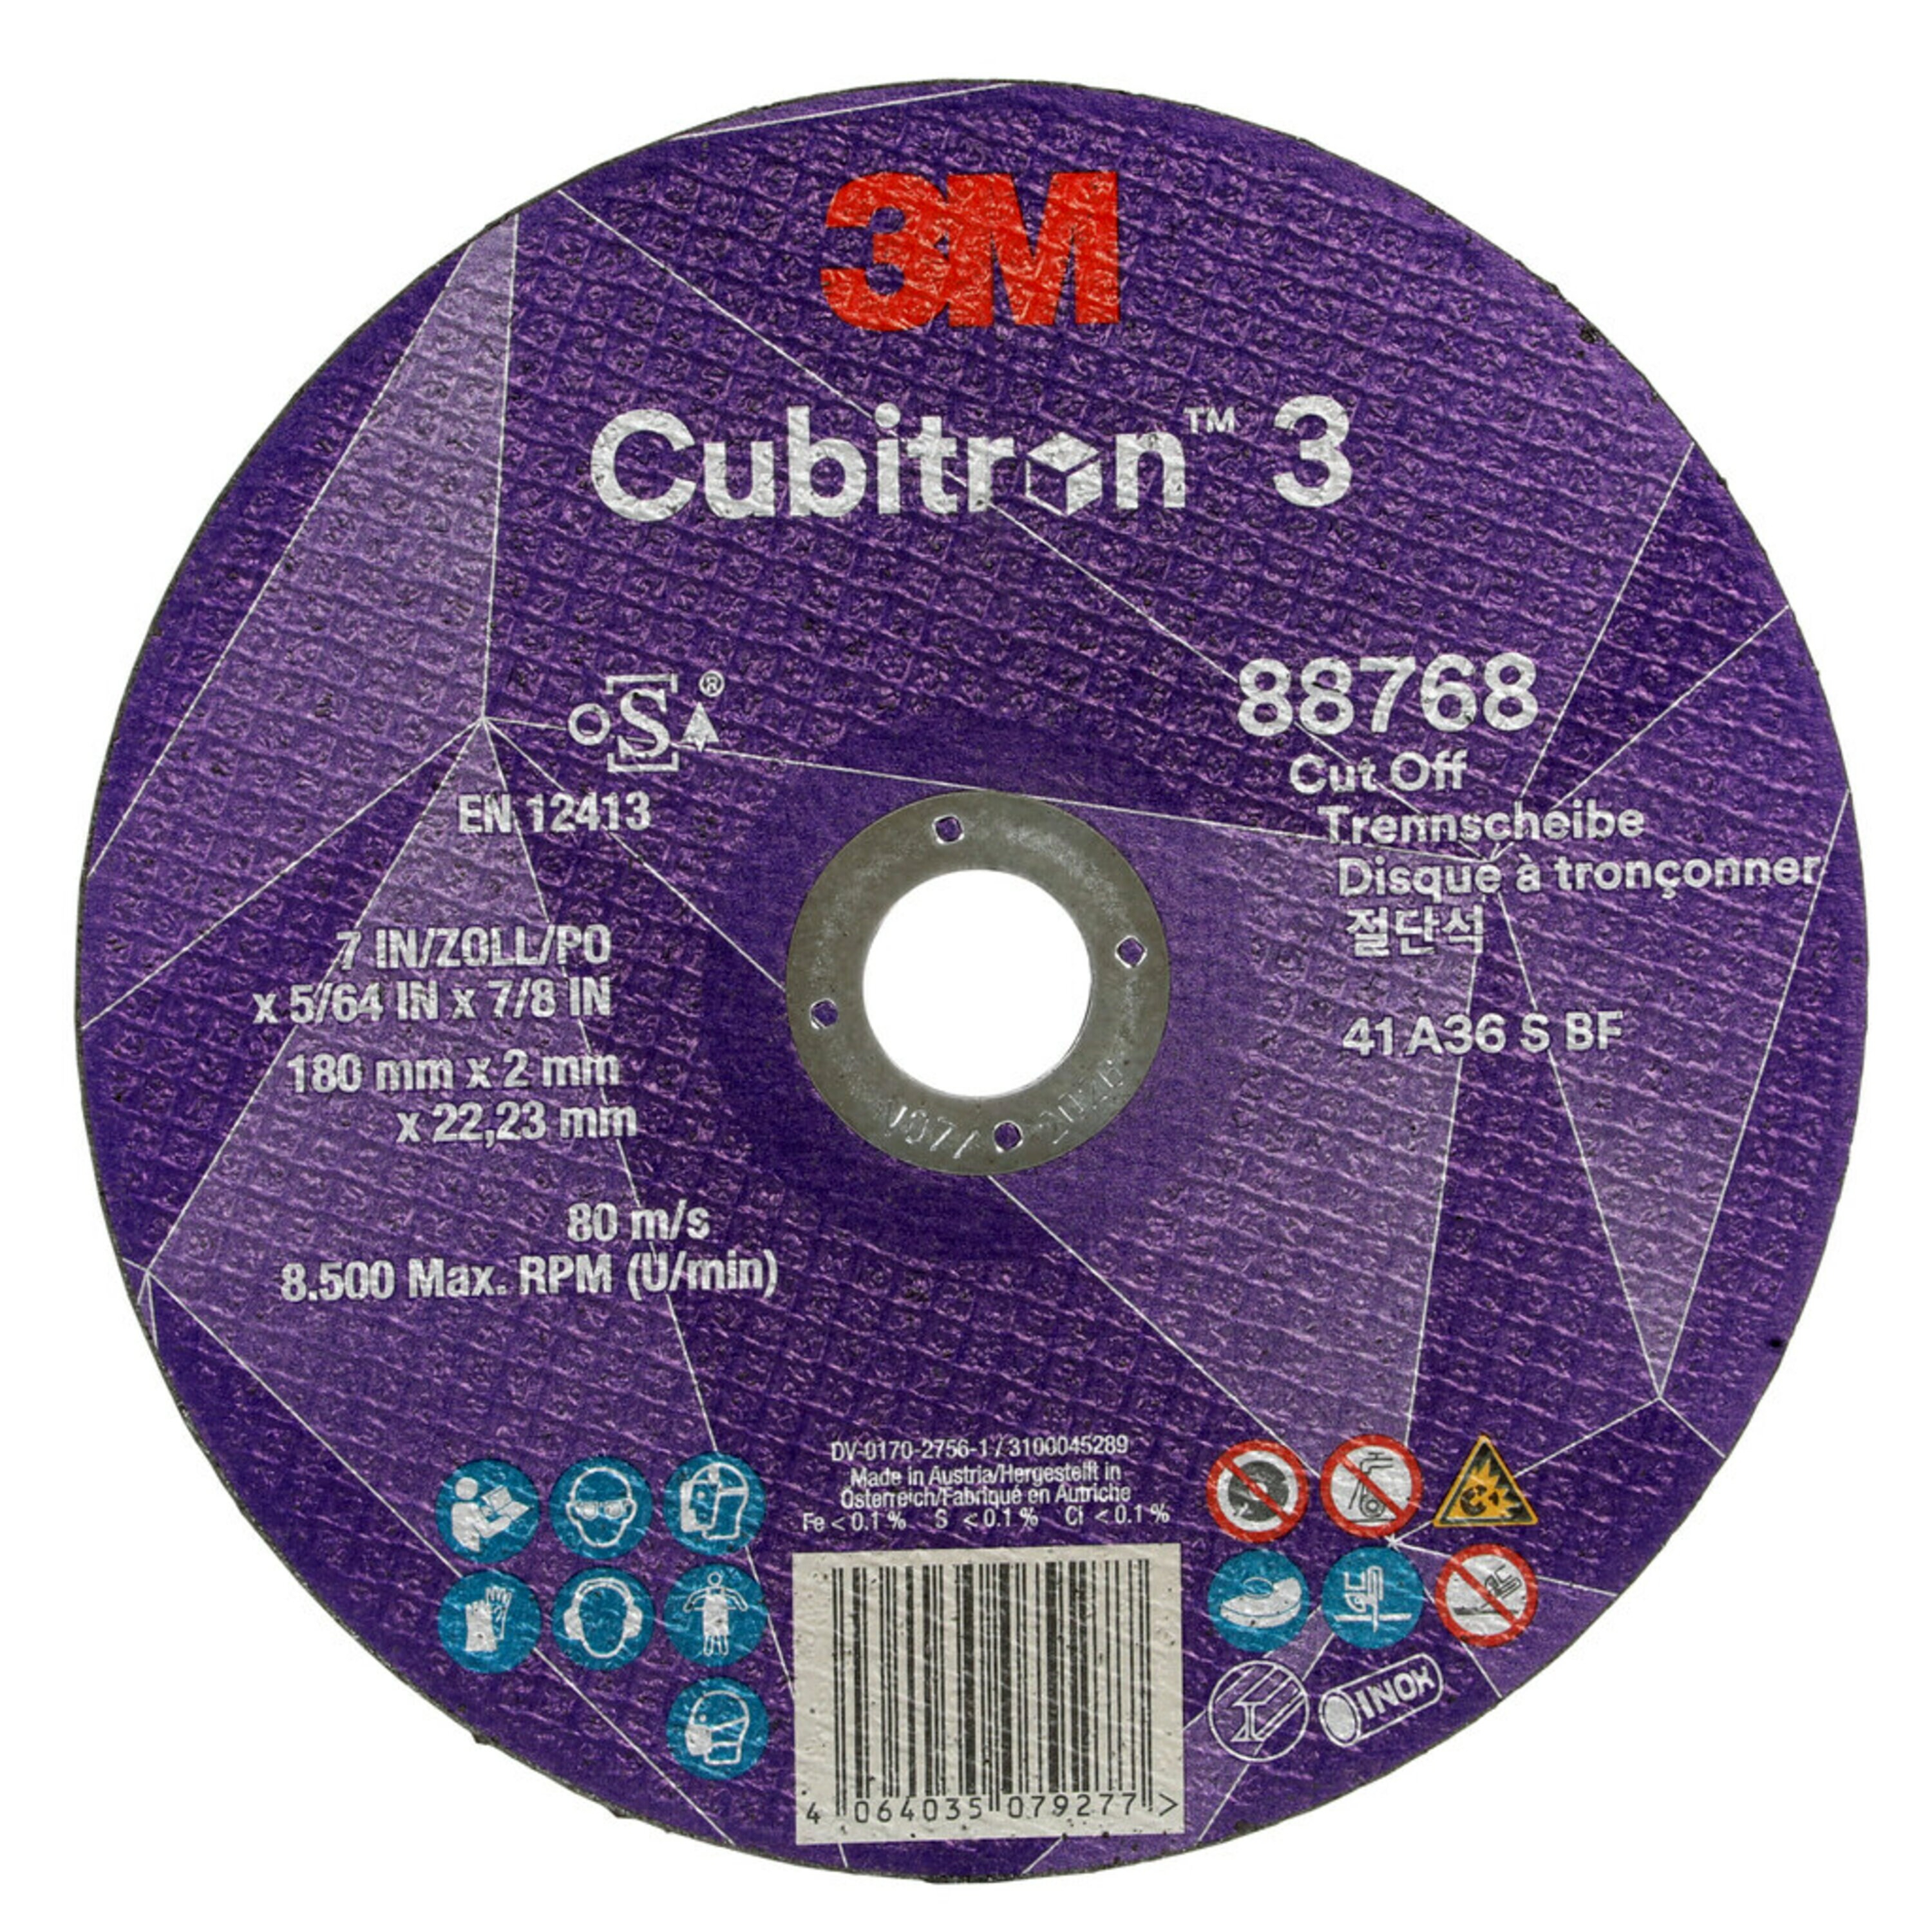 3M Cubitron 3 Disque à tronçonner, 180 mm, 2 mm, 22,23 mm, 36 , type 41 #88768